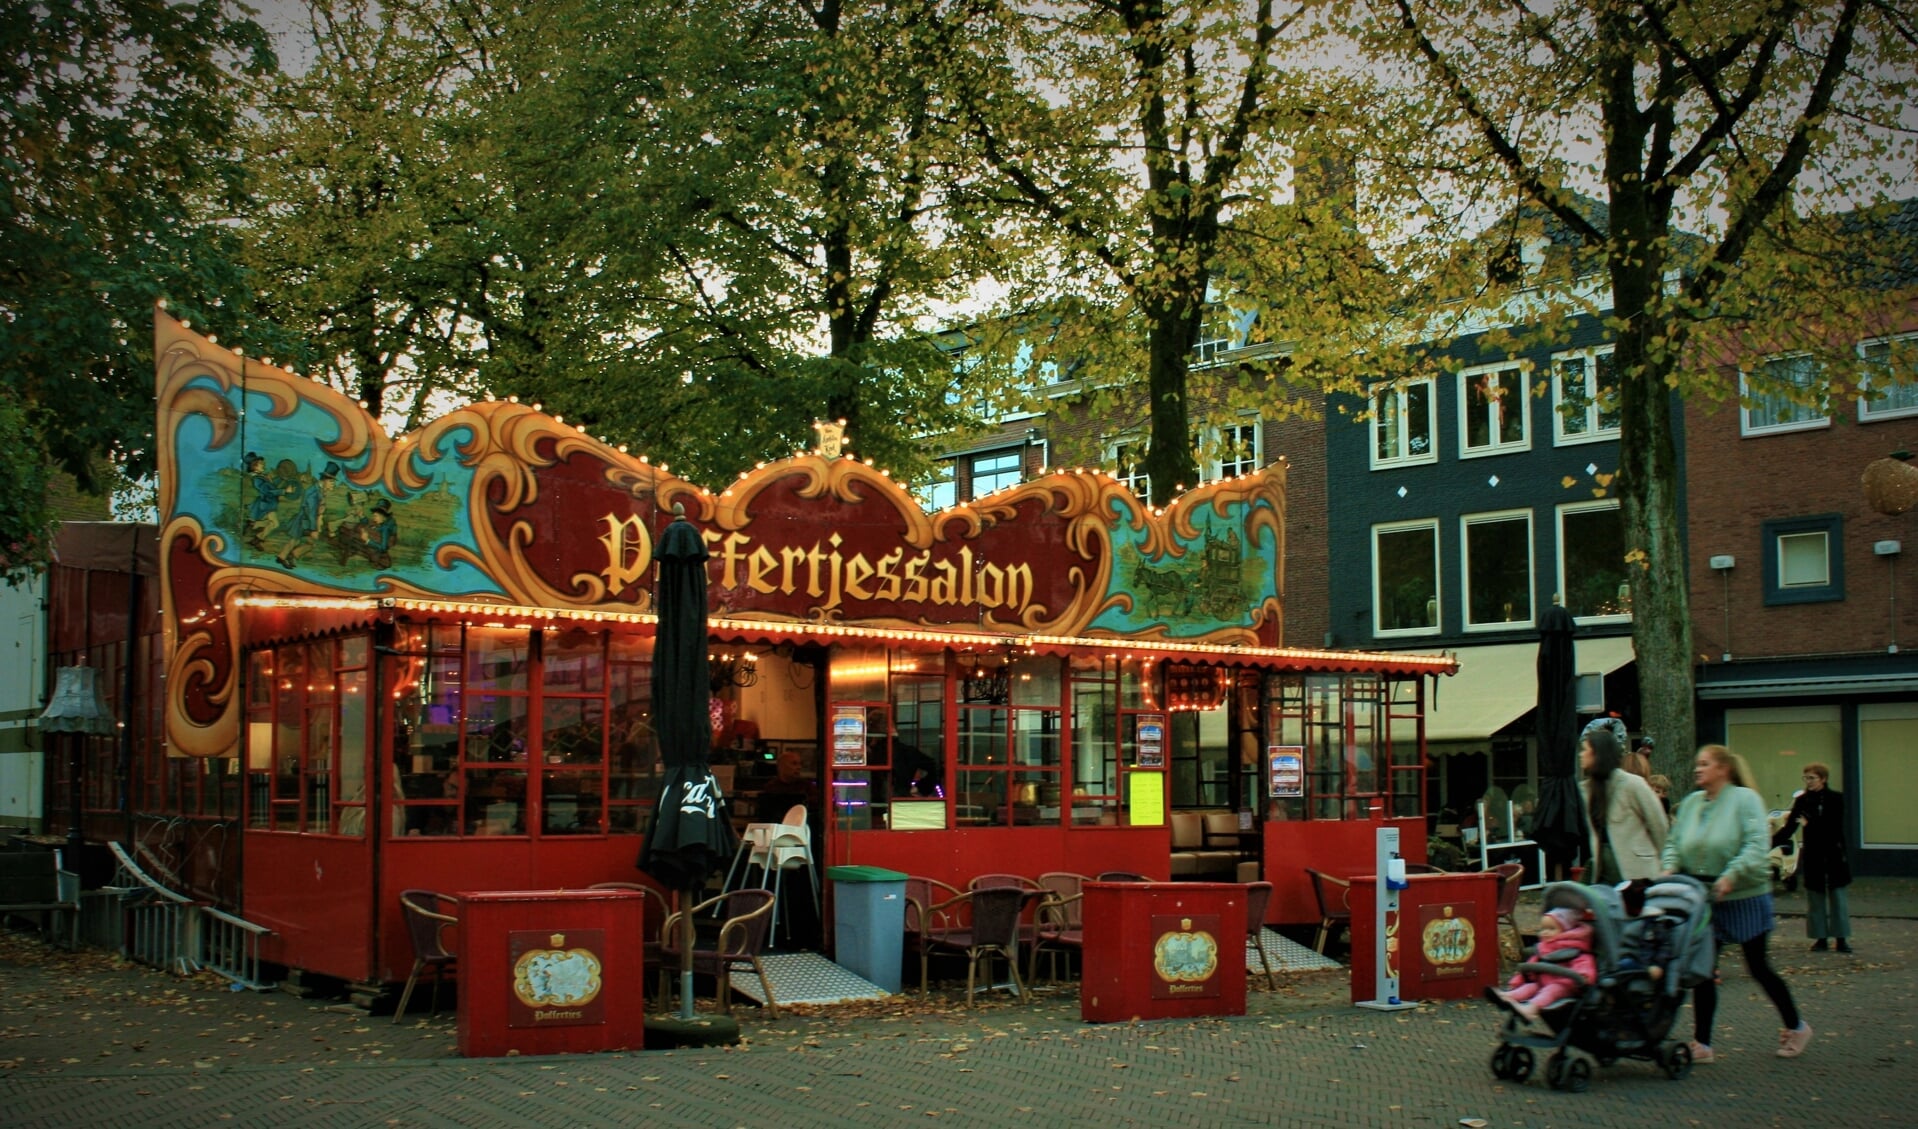 Zondag staat hij er nog, de nostalgische, sfeervolle poffertjessalon op de Groenmarkt in Tiel.